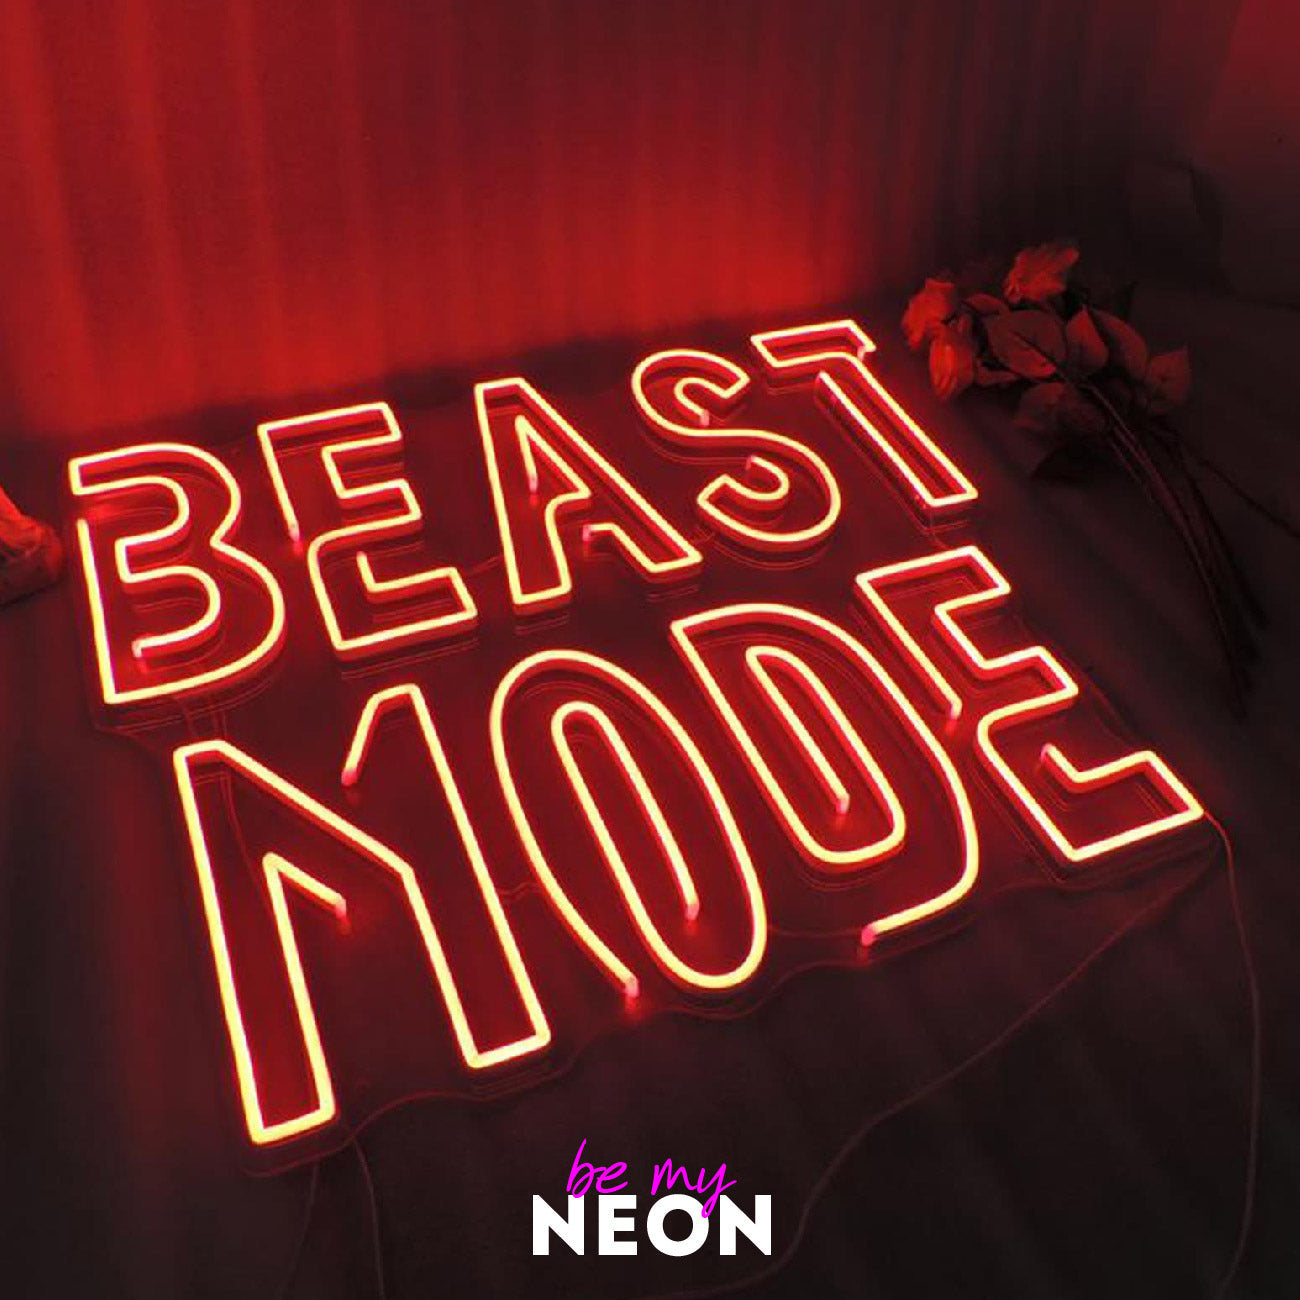 "BEAST MODE" LED Neonschild